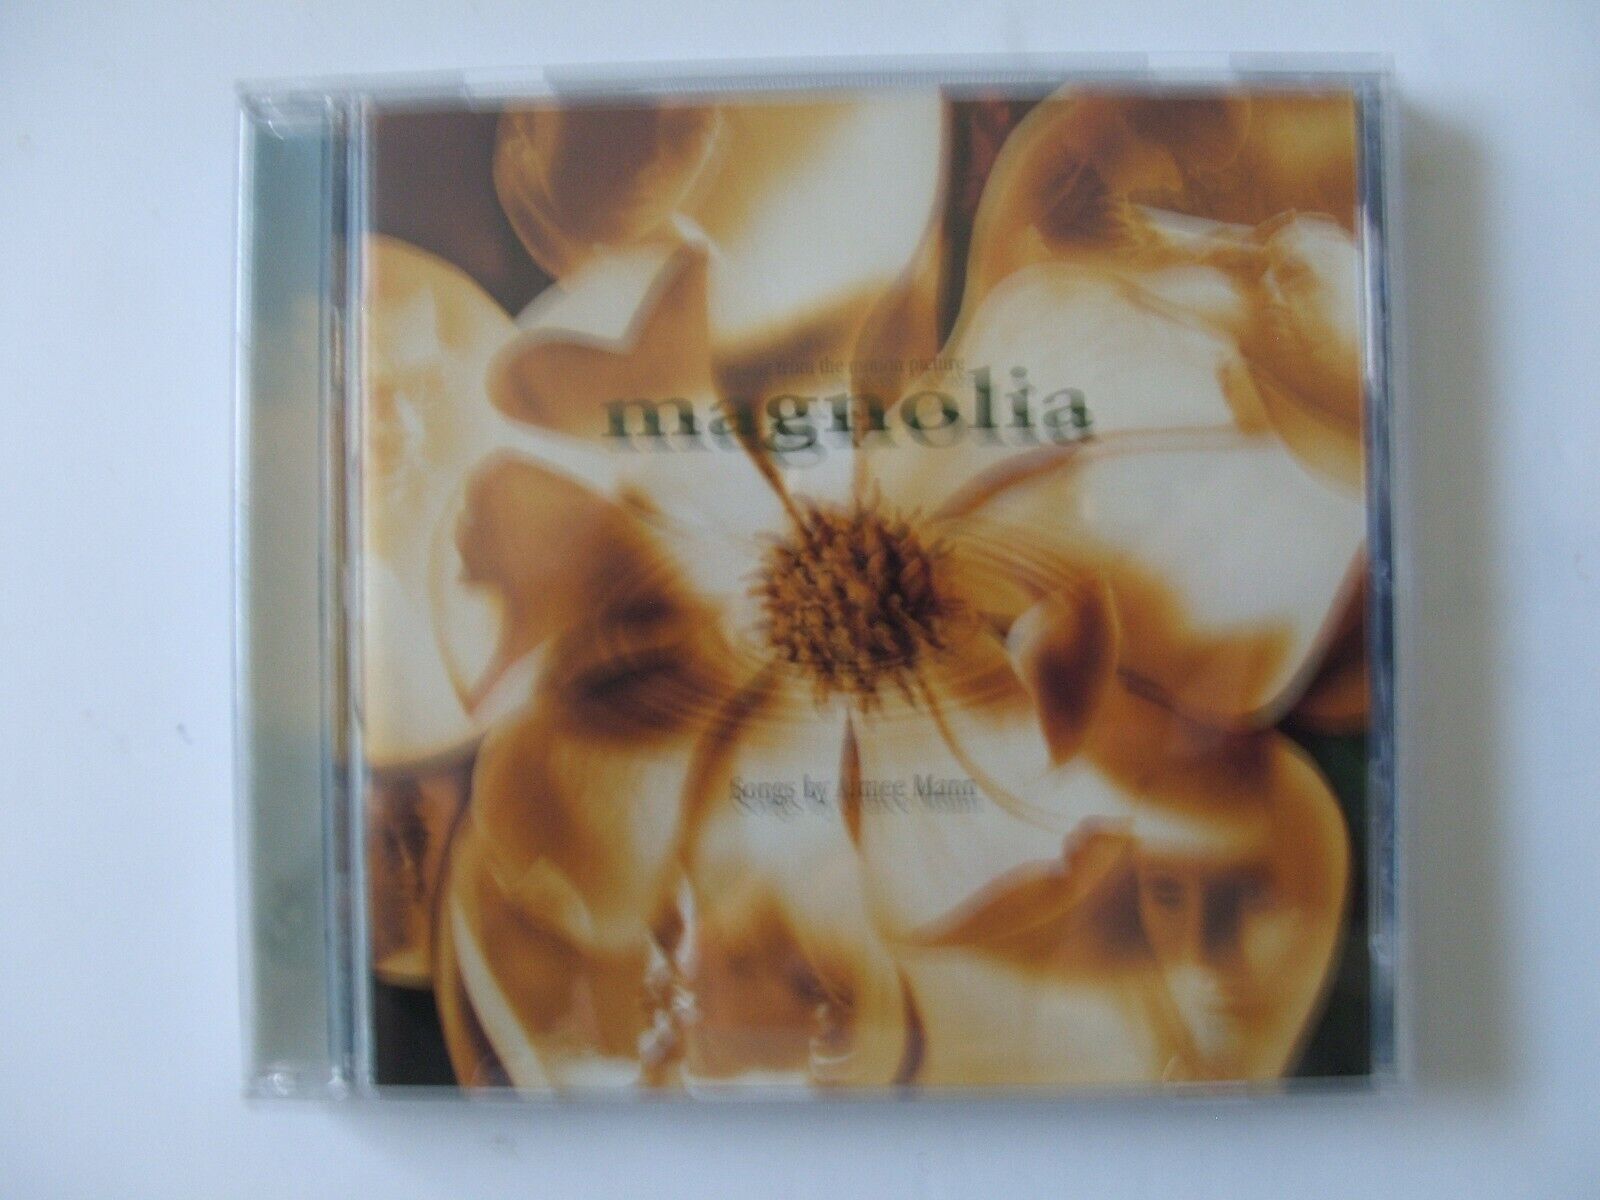 magnolia soundtrack cd cover